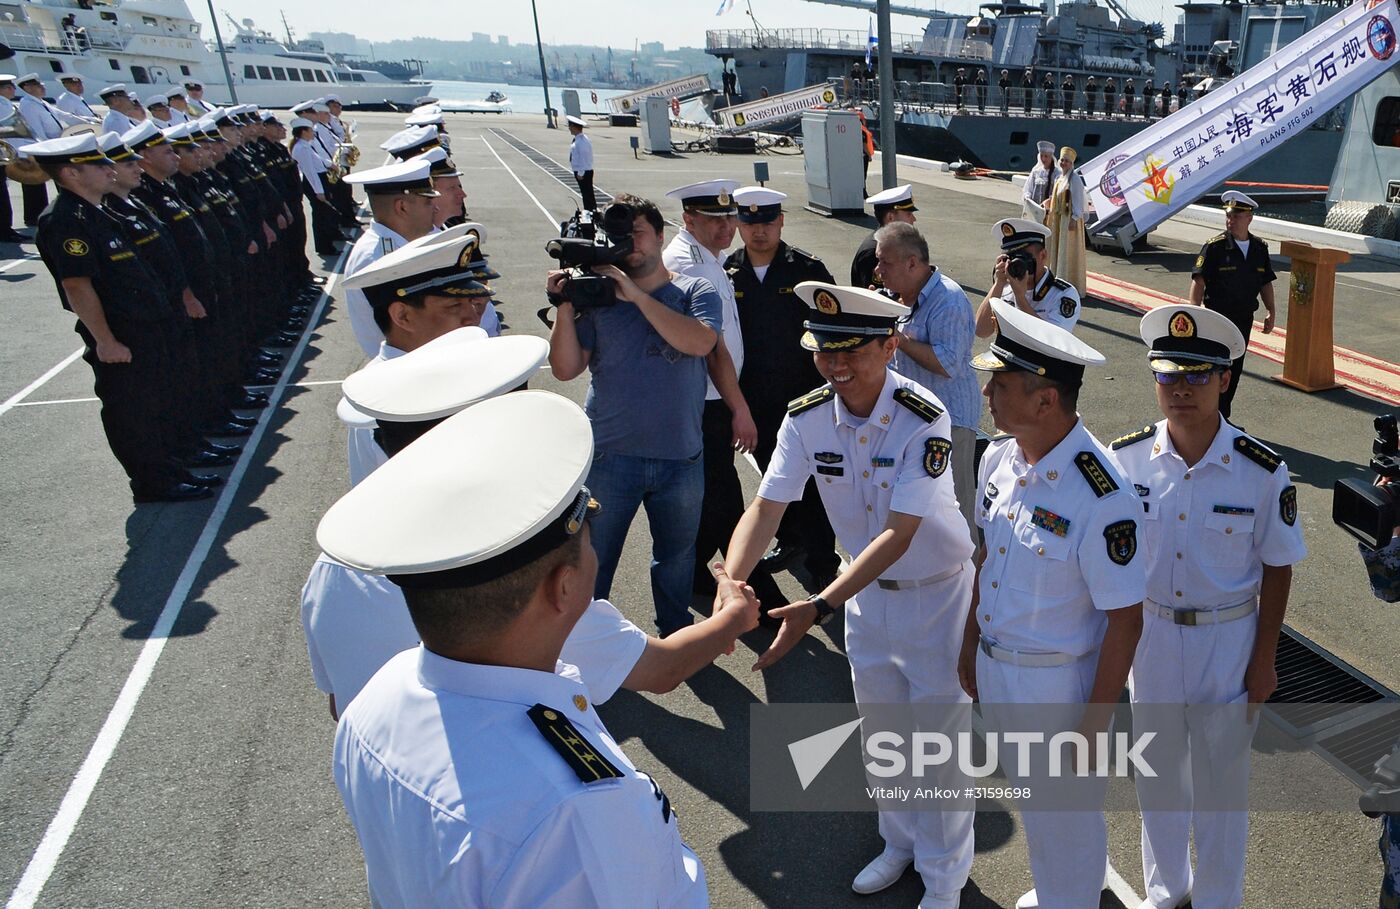 Chinese corvette Huangshi arrives in Vladivostok